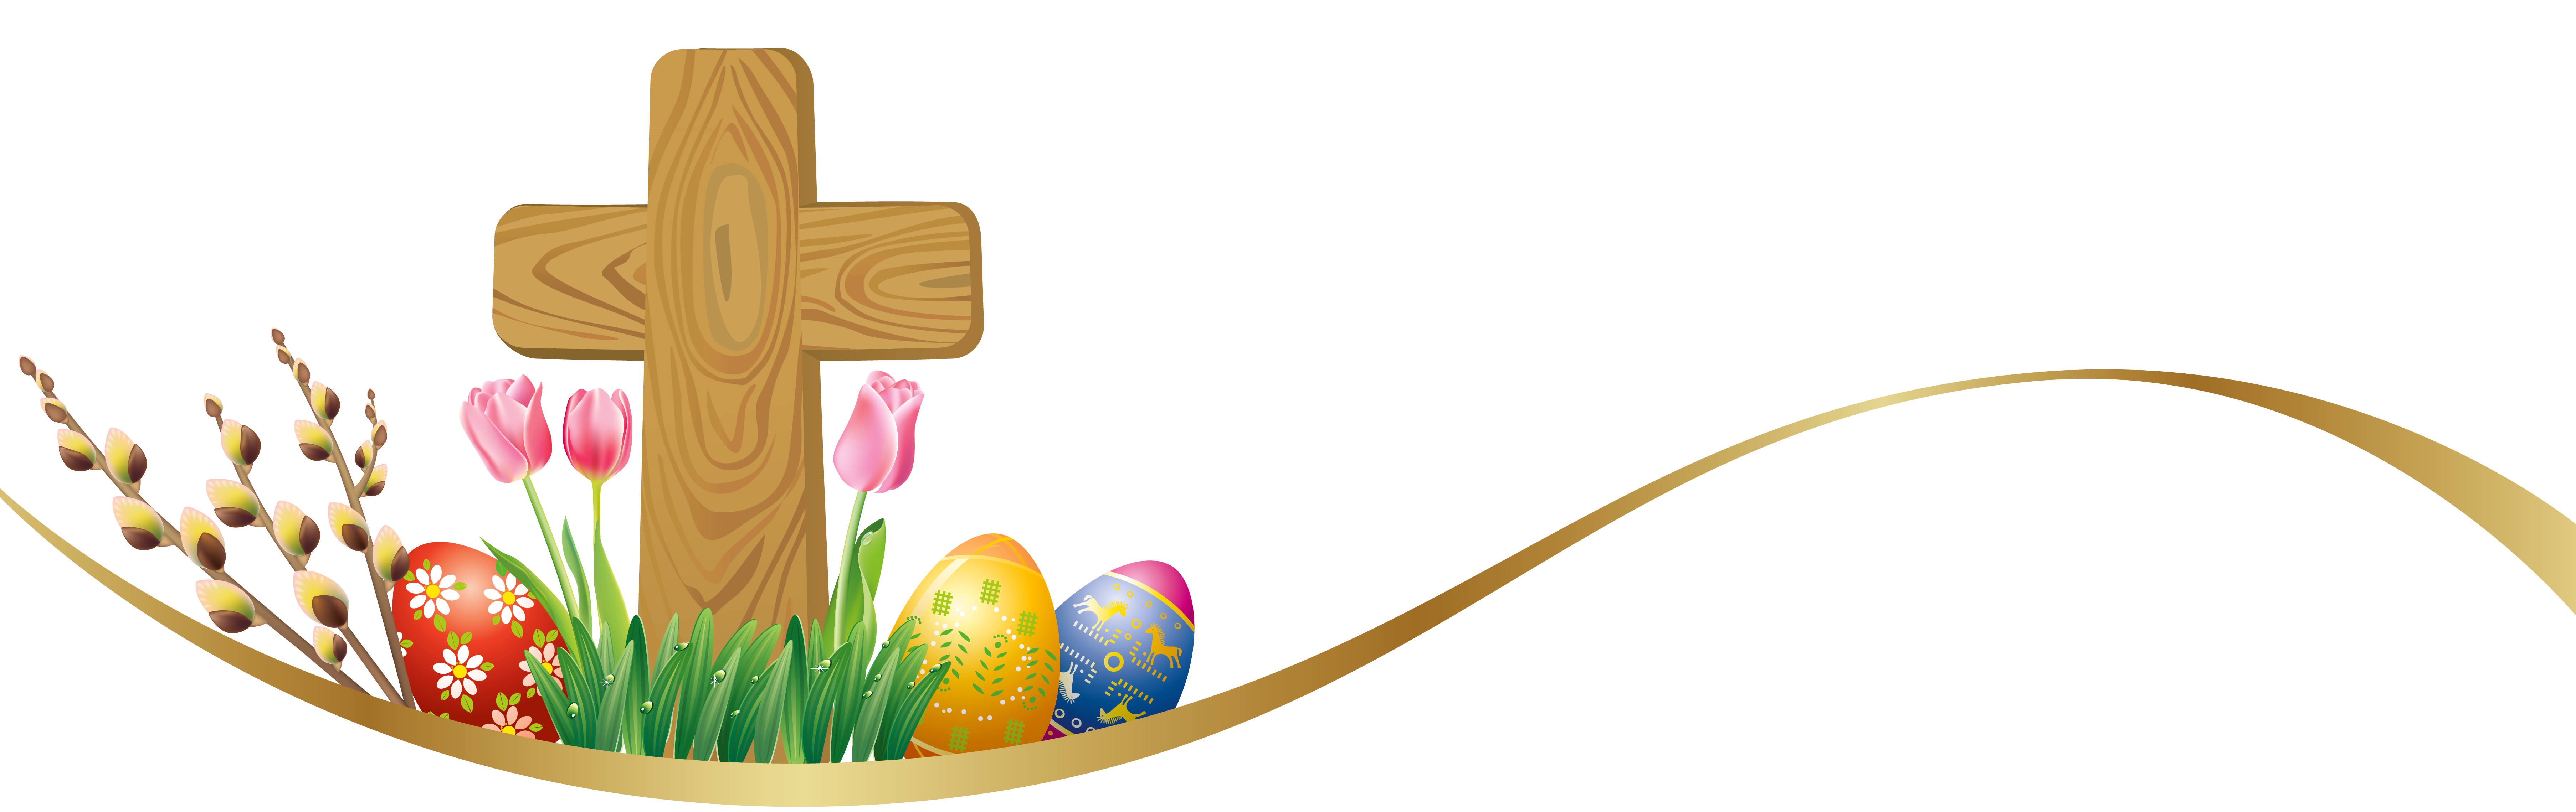 54+ Easter Egg Banner Clip Art